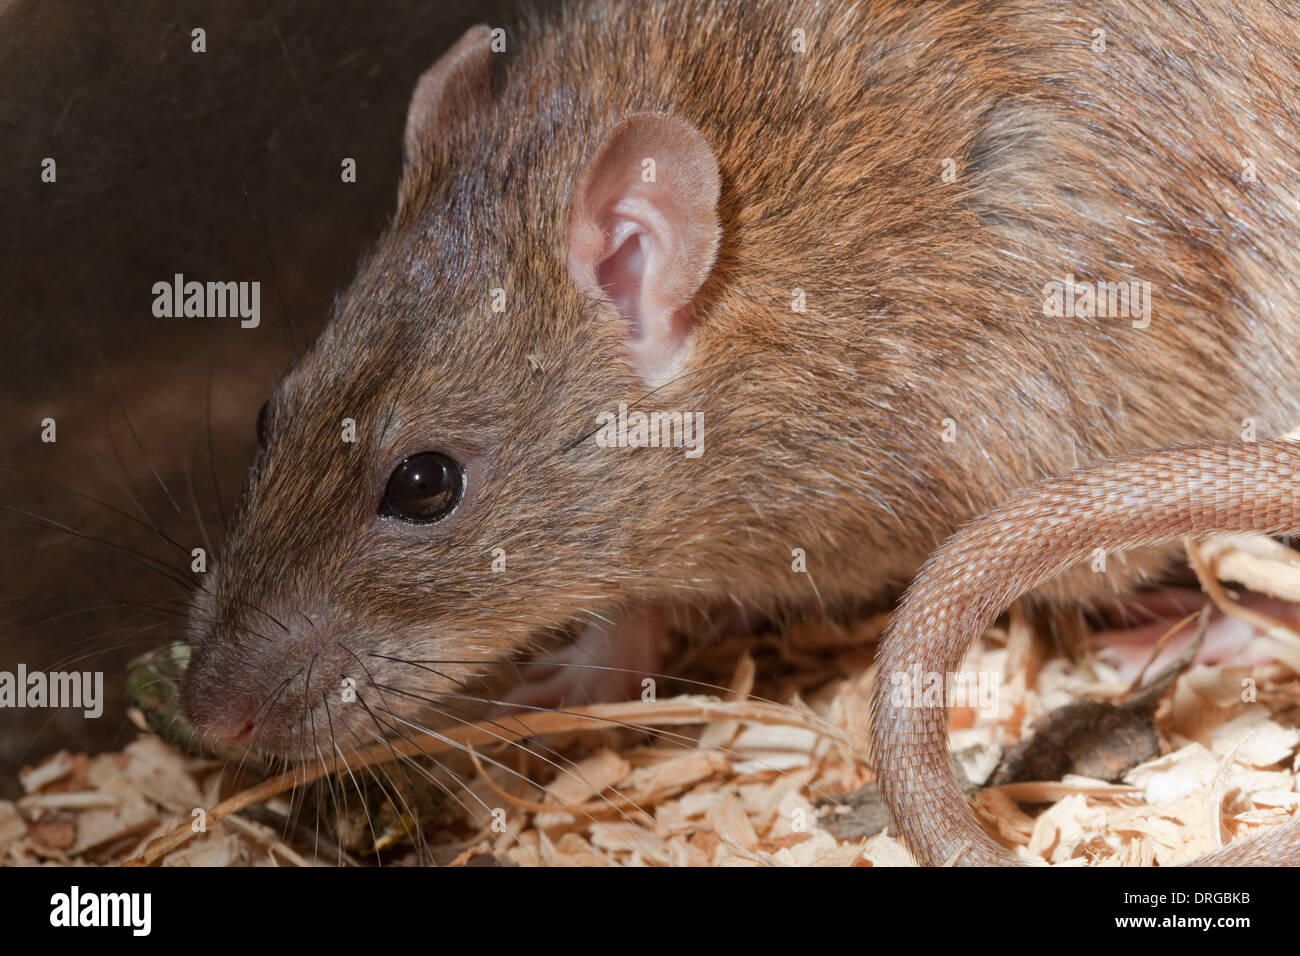 Marrone (Ratto Rattus norvegicus). Testa che mostra le caratteristiche facciali, organi di senso, vibrissae, naso, occhi, orecchie esterne. Foto Stock